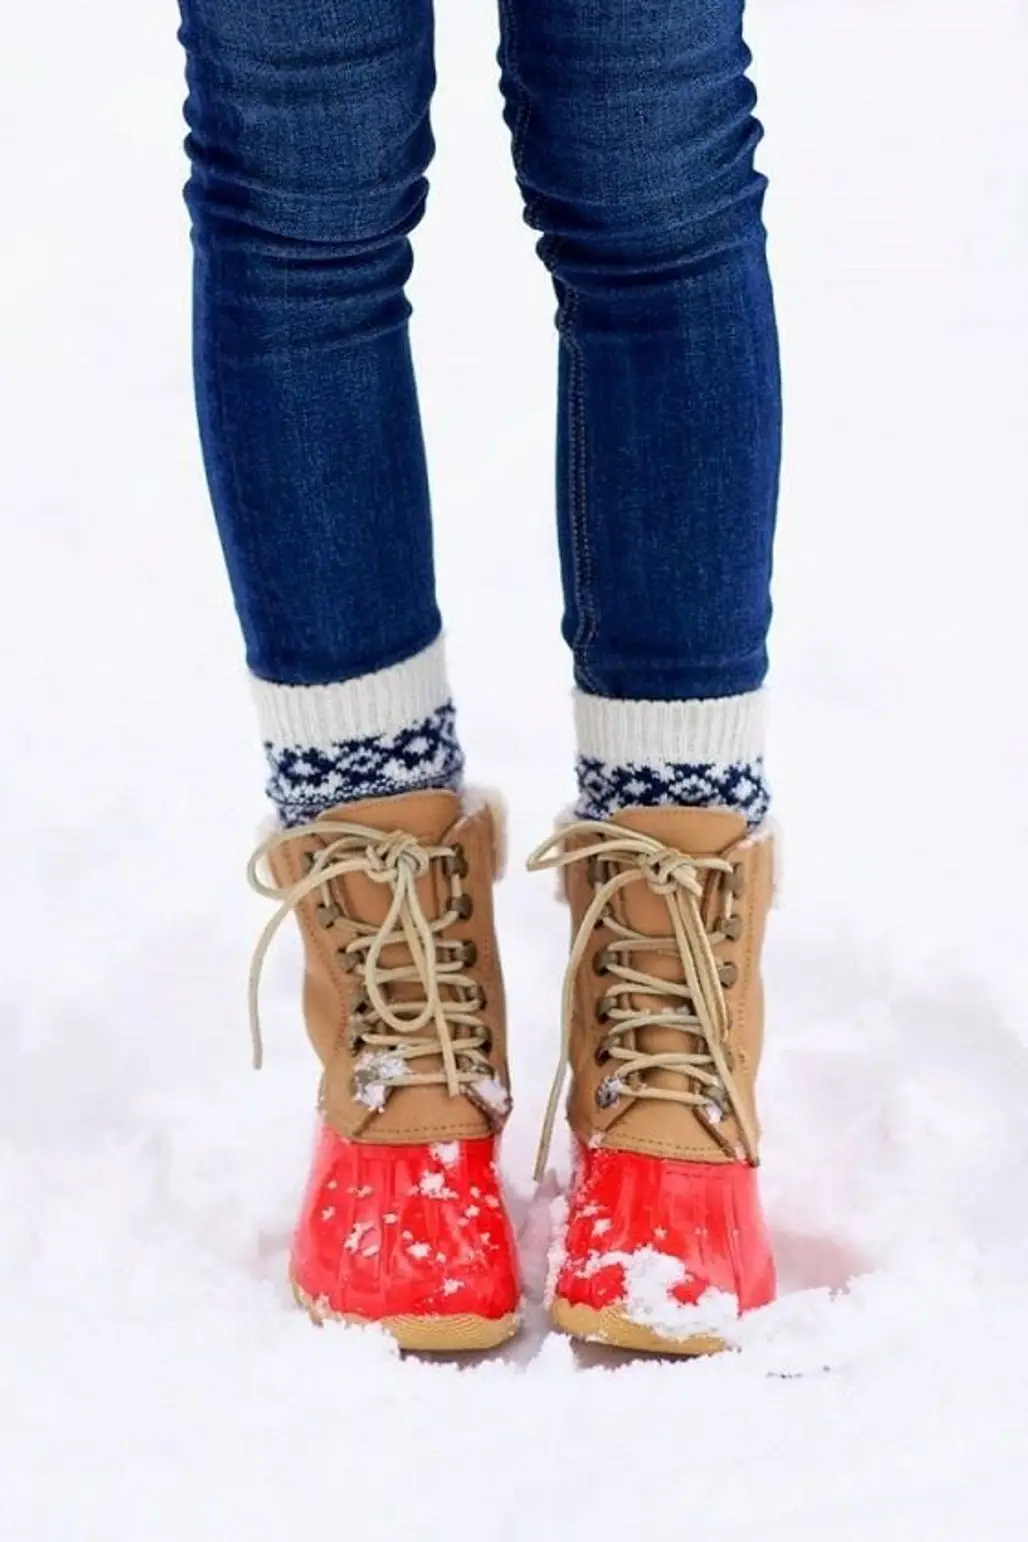 footwear,winter,season,leather,leg,